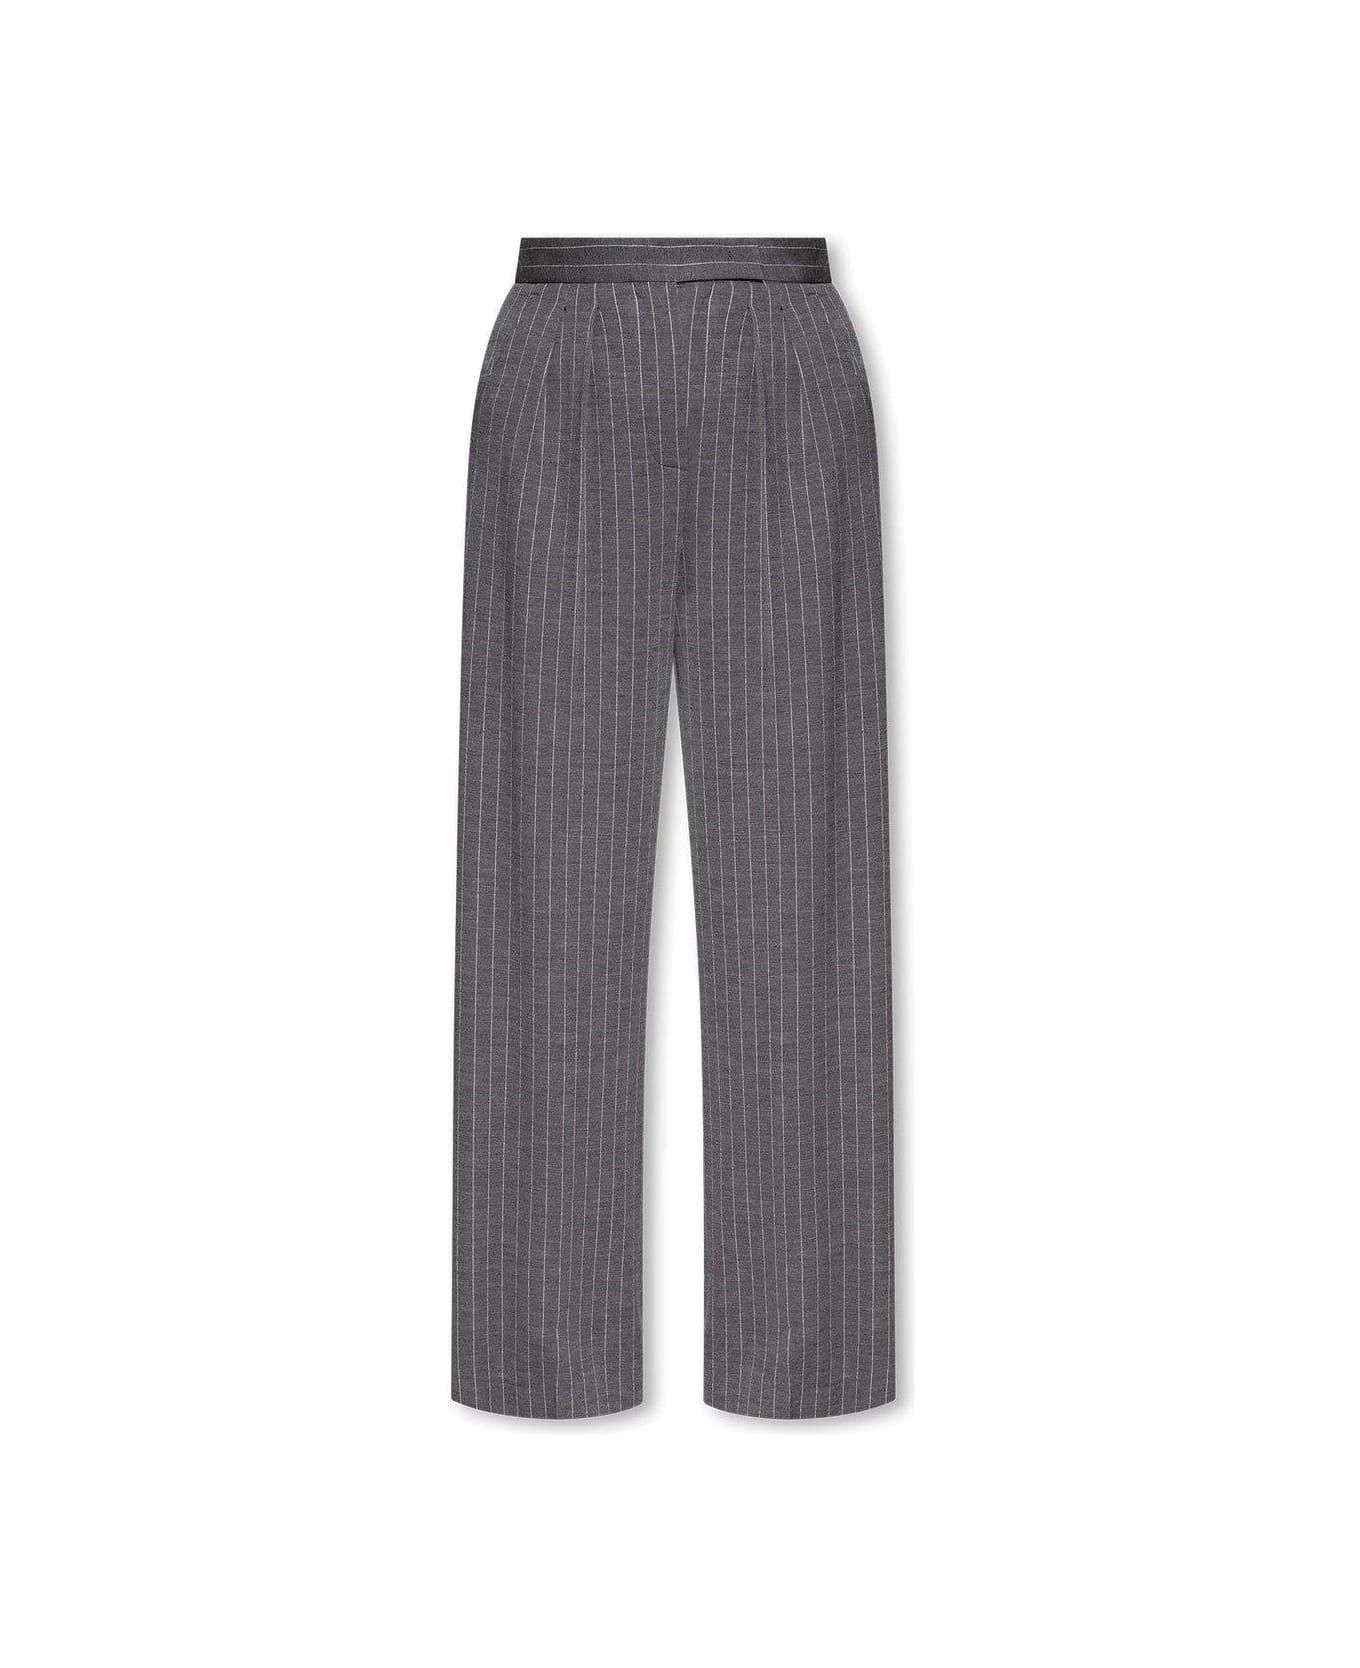 Max Mara Pinstriped Trousers - Medium grey